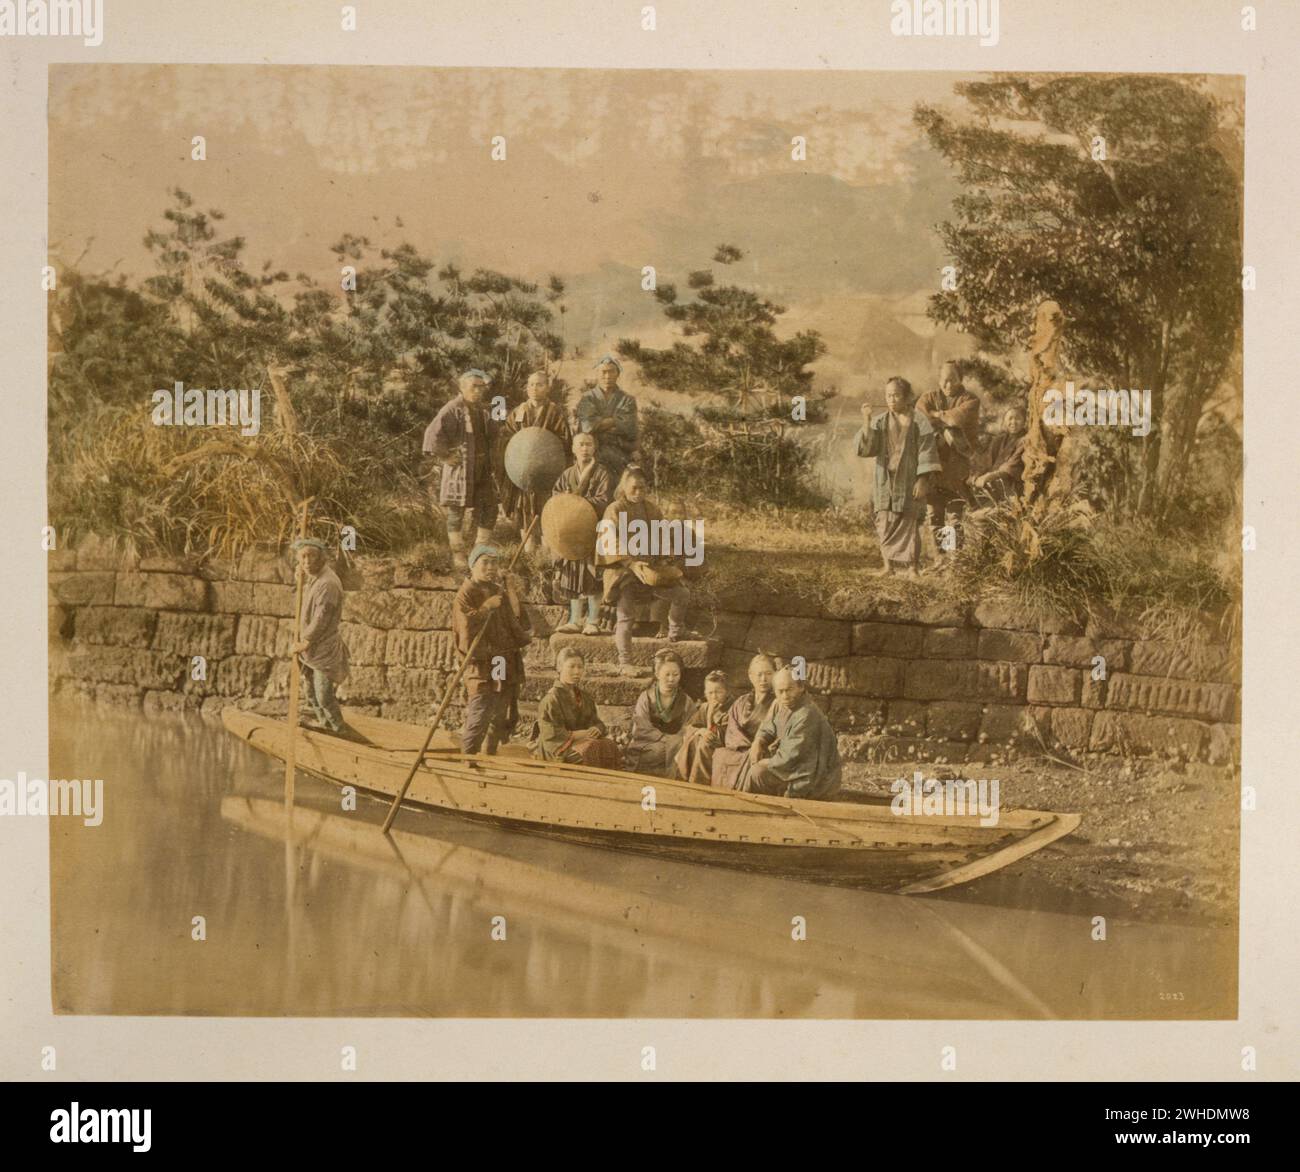 Mehrere Personen posierten für ein Porträt in einer Fähre und standen am Ufer eines Flusses am Terminal... Japan handkoloriert mit Aquarell Fotografie Print um die 1870er Jahre Stockfoto